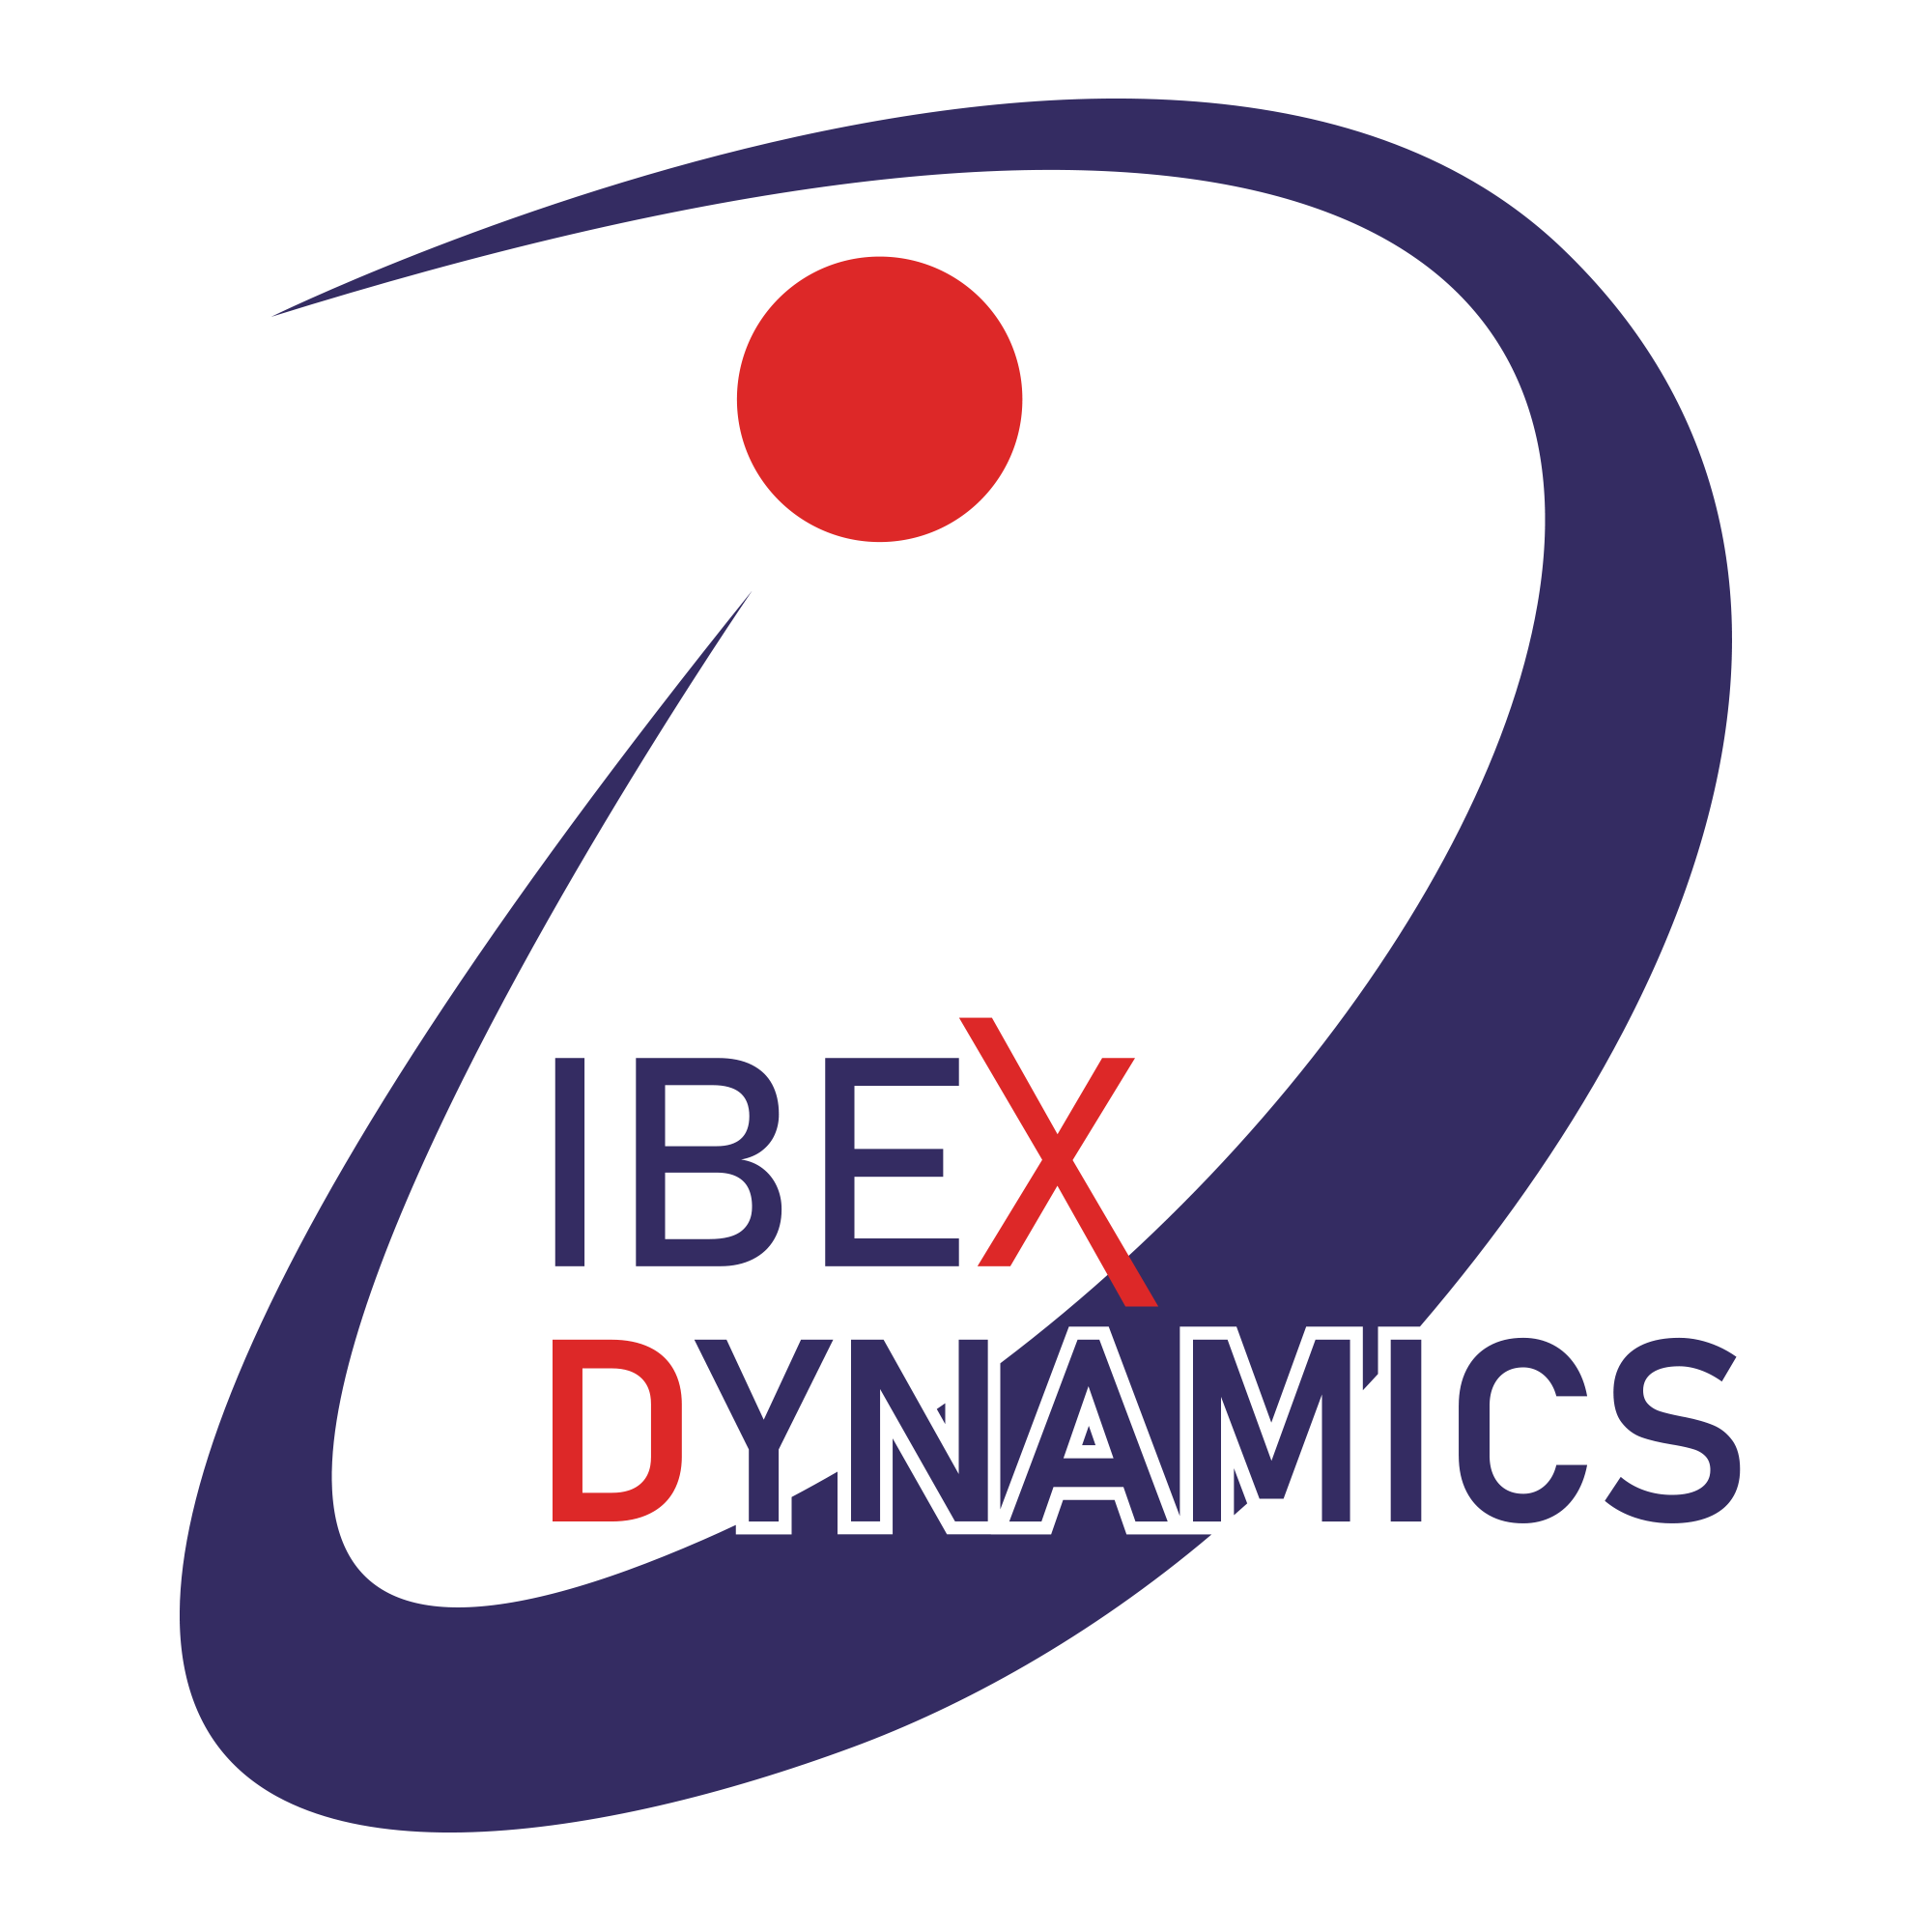 IBEX DYNAMICS (PVT) LTD.